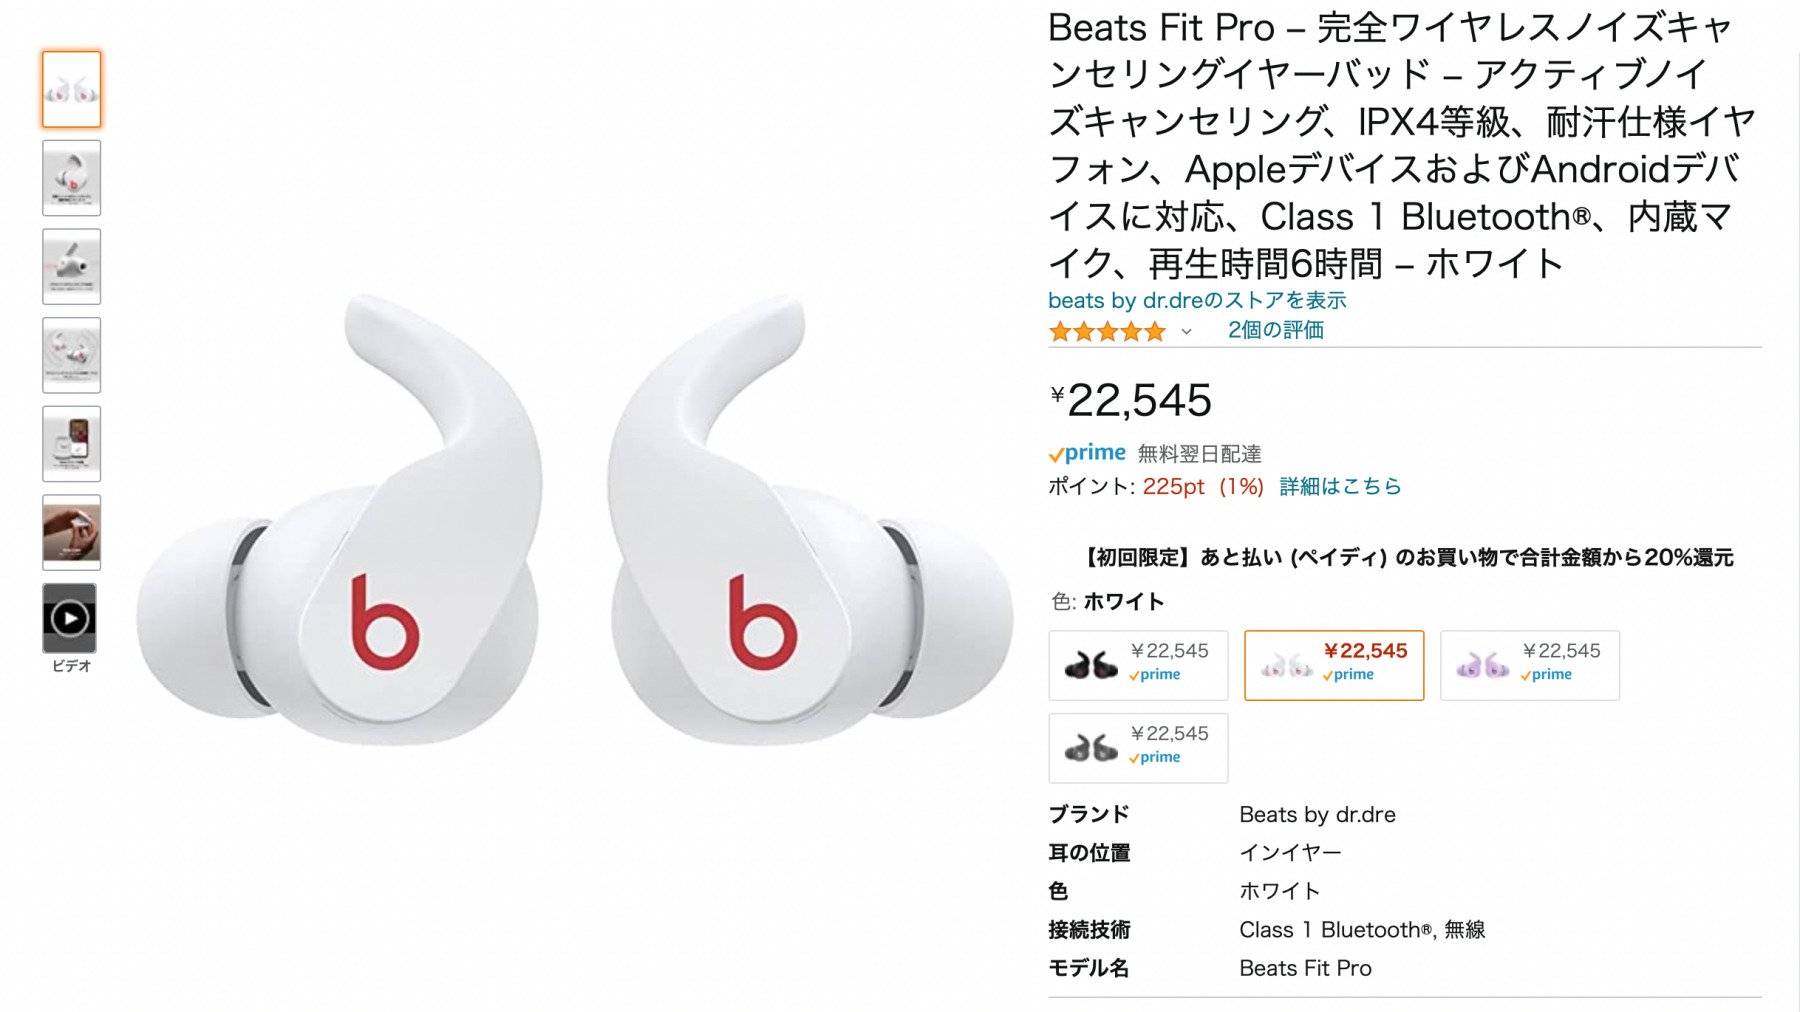 音質・機能・価格、全てが完璧な「Beats Fit Pro」をなぜ買わないのか？ | きなこぱん